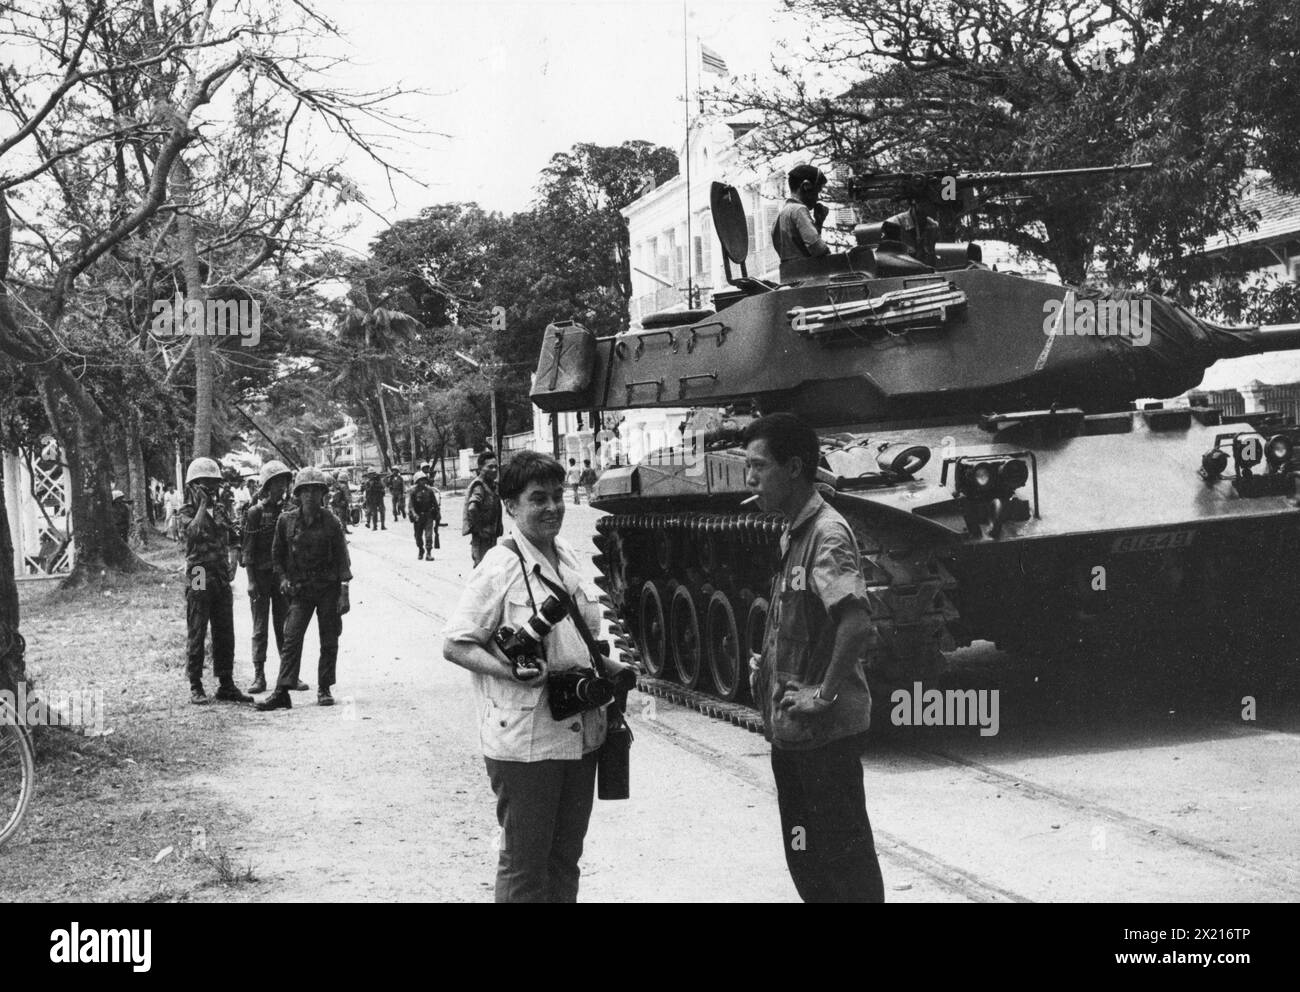 Ereignisse, Vietnamkrieg, südvietnamesische Truppen mit einem M41 Walker-Traktorpanzer in einer Stadt, um 1970, ZUSÄTZLICHE RECHTE-RÄUMUNG-INFO-NICHT-VERFÜGBAR Stockfoto